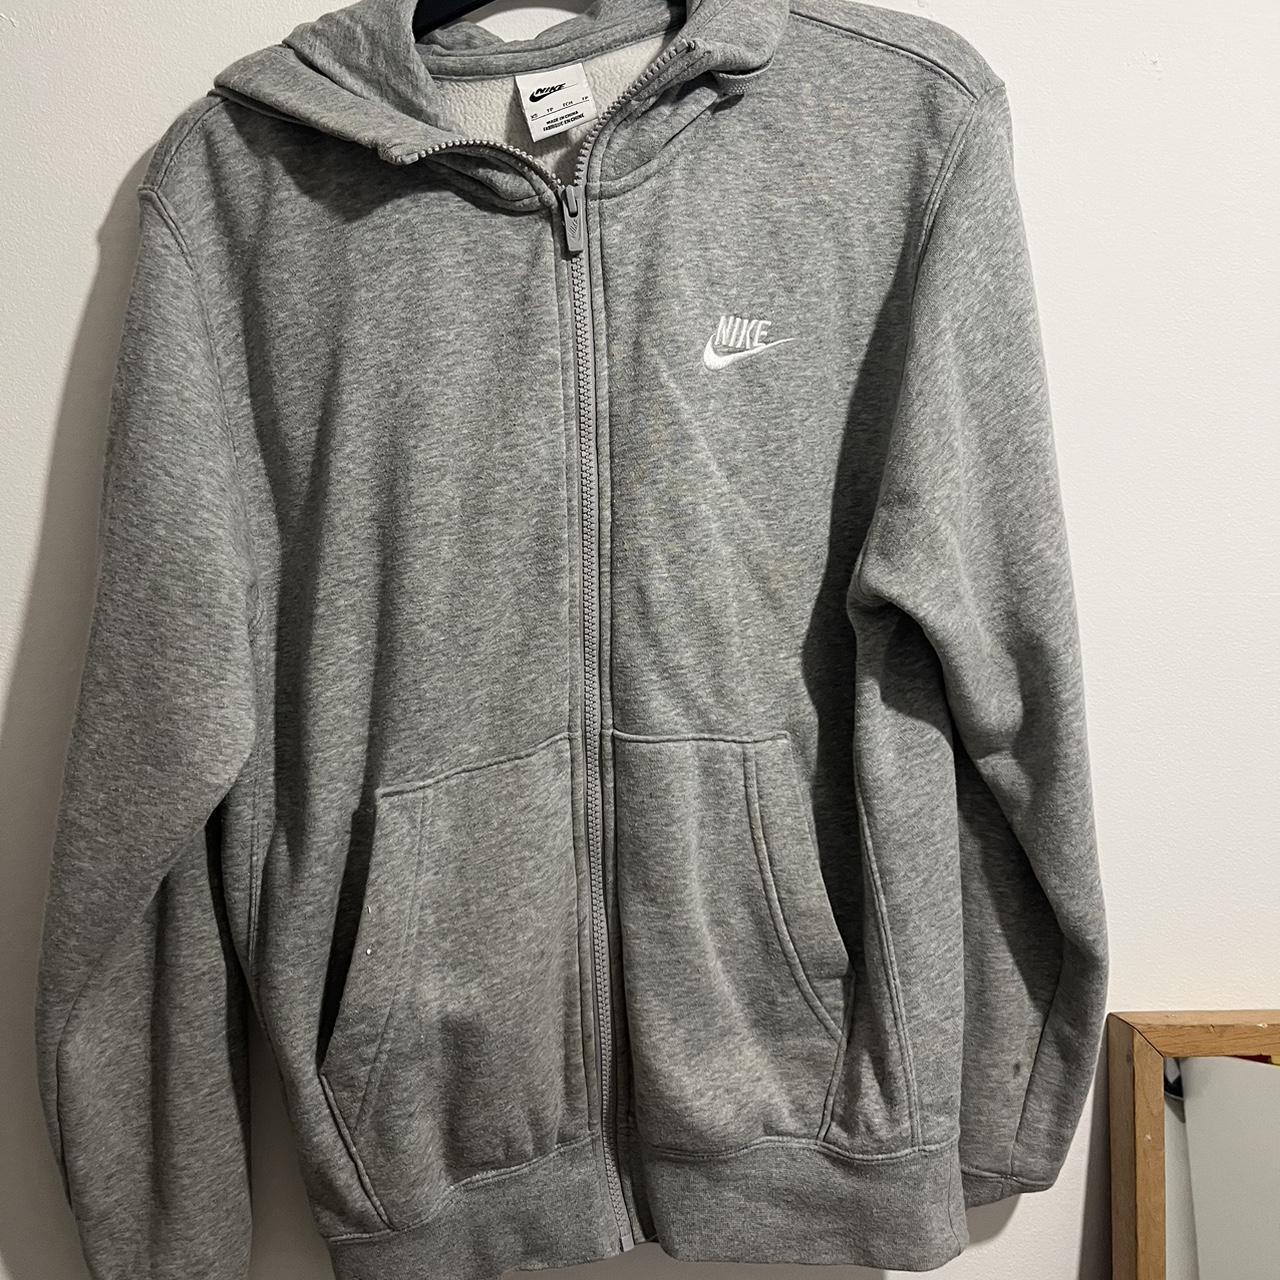 Nike zipped hoodie grey - Depop